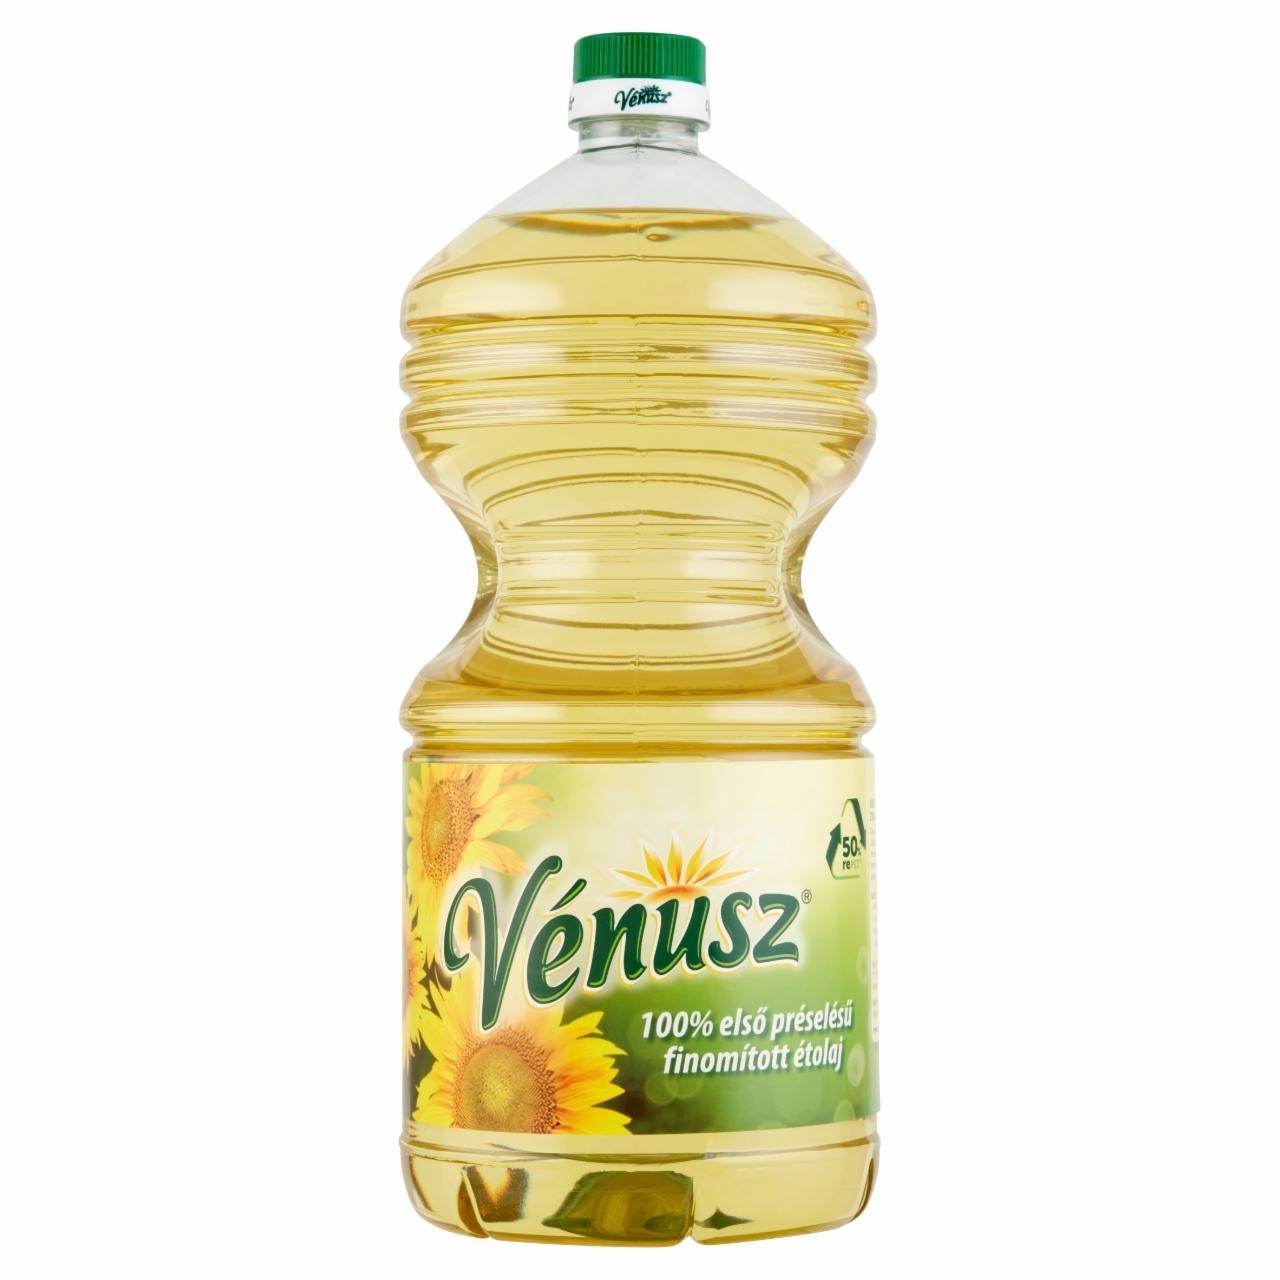 Képek - Vénusz 100% első préselésű, finomított napraforgó-étolaj 3 l